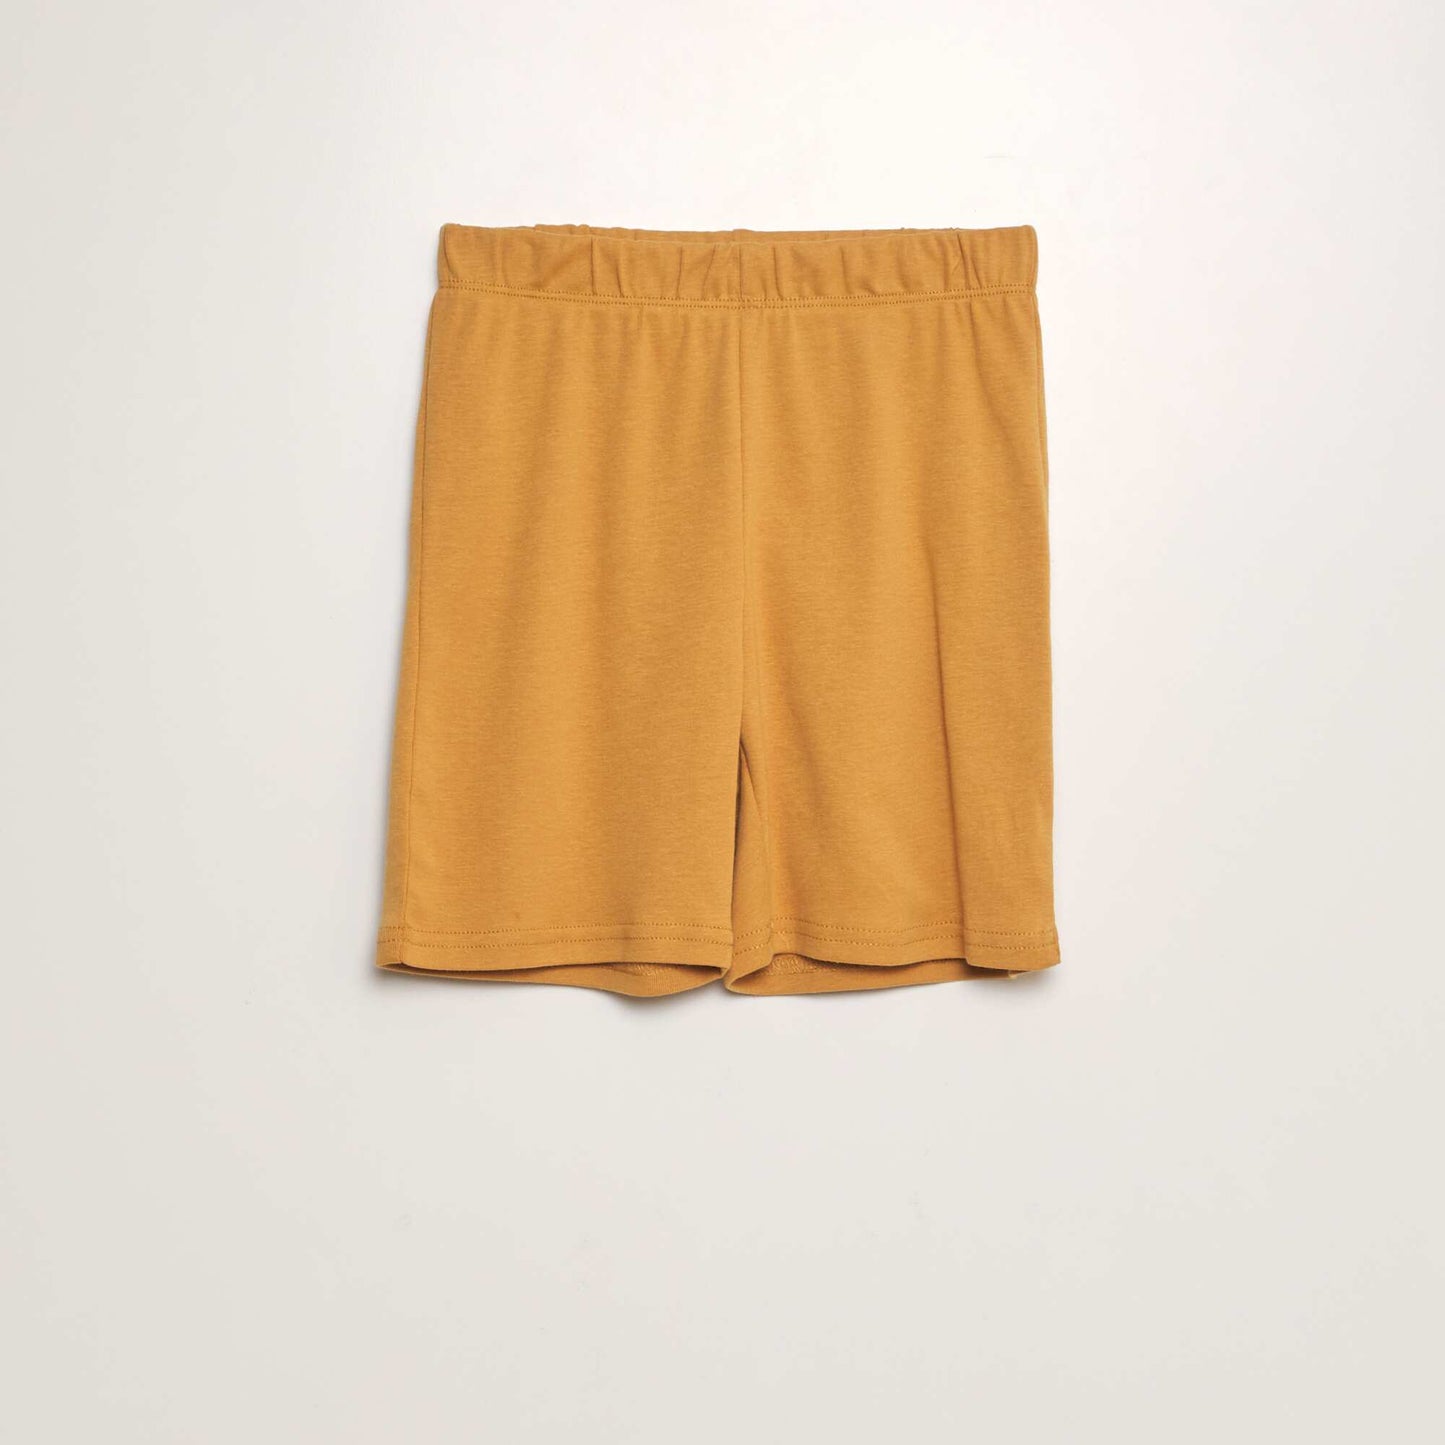 Short pyjamas with shorts + T-shirt - 2-piece set GREY